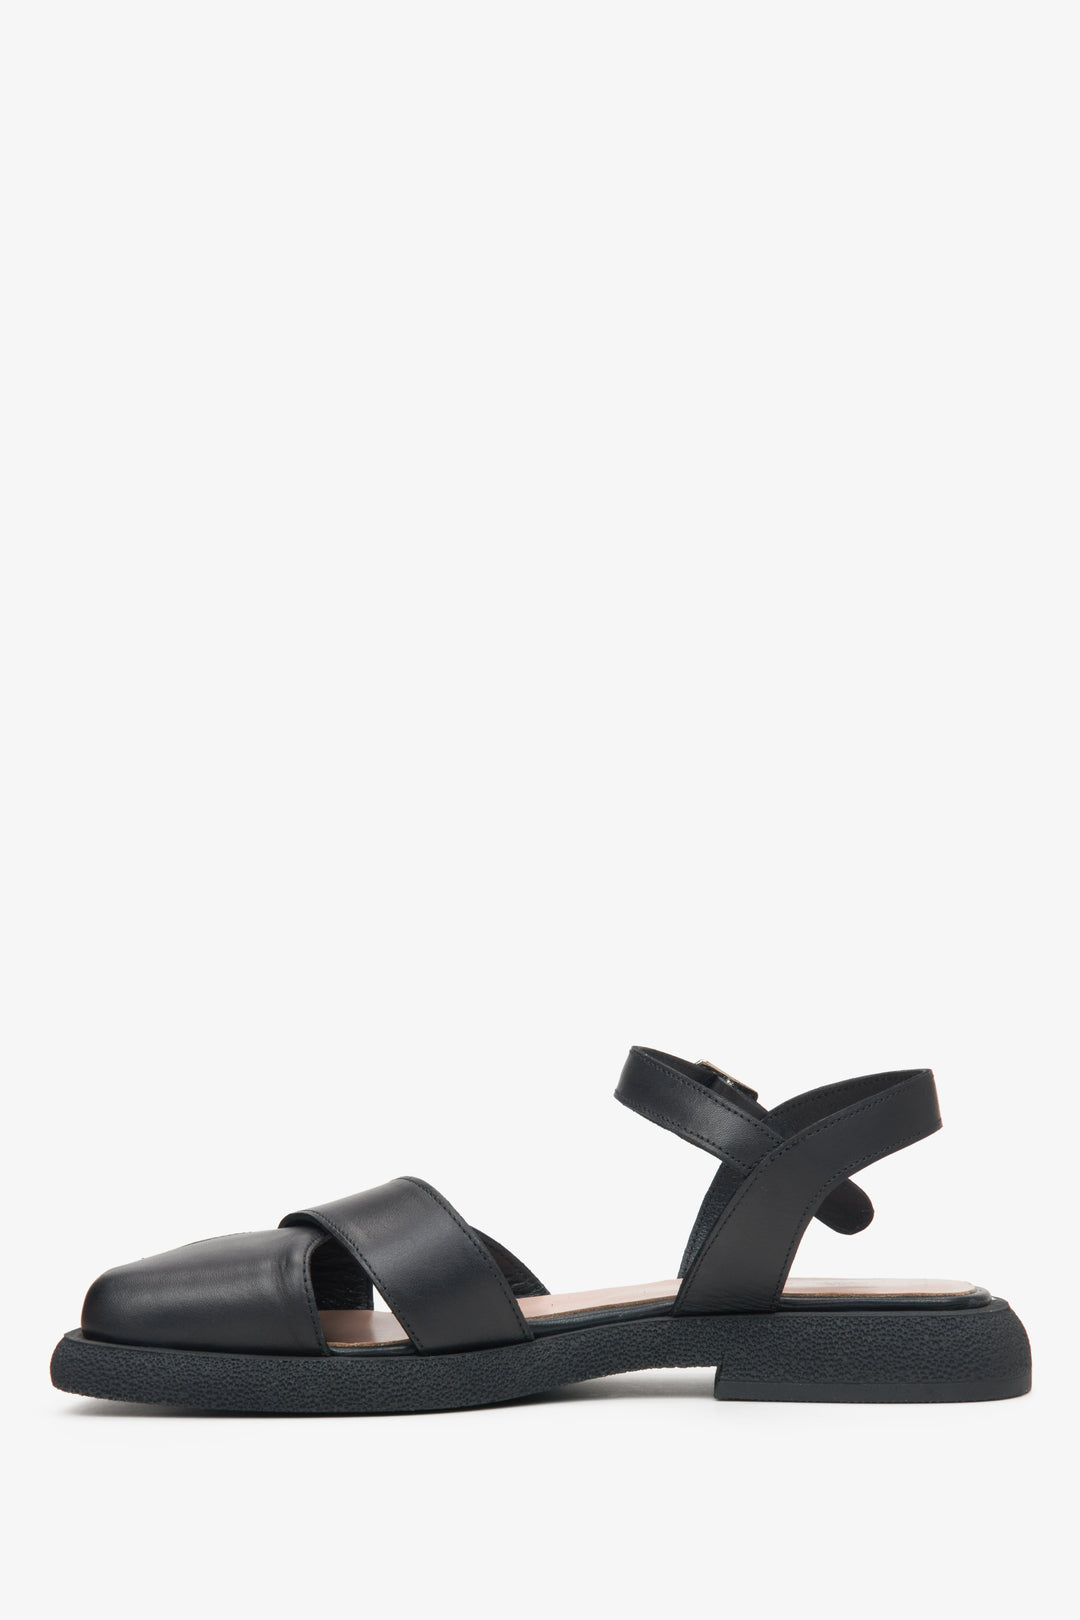 Women's black leather sandals by Estro - shoe profile.